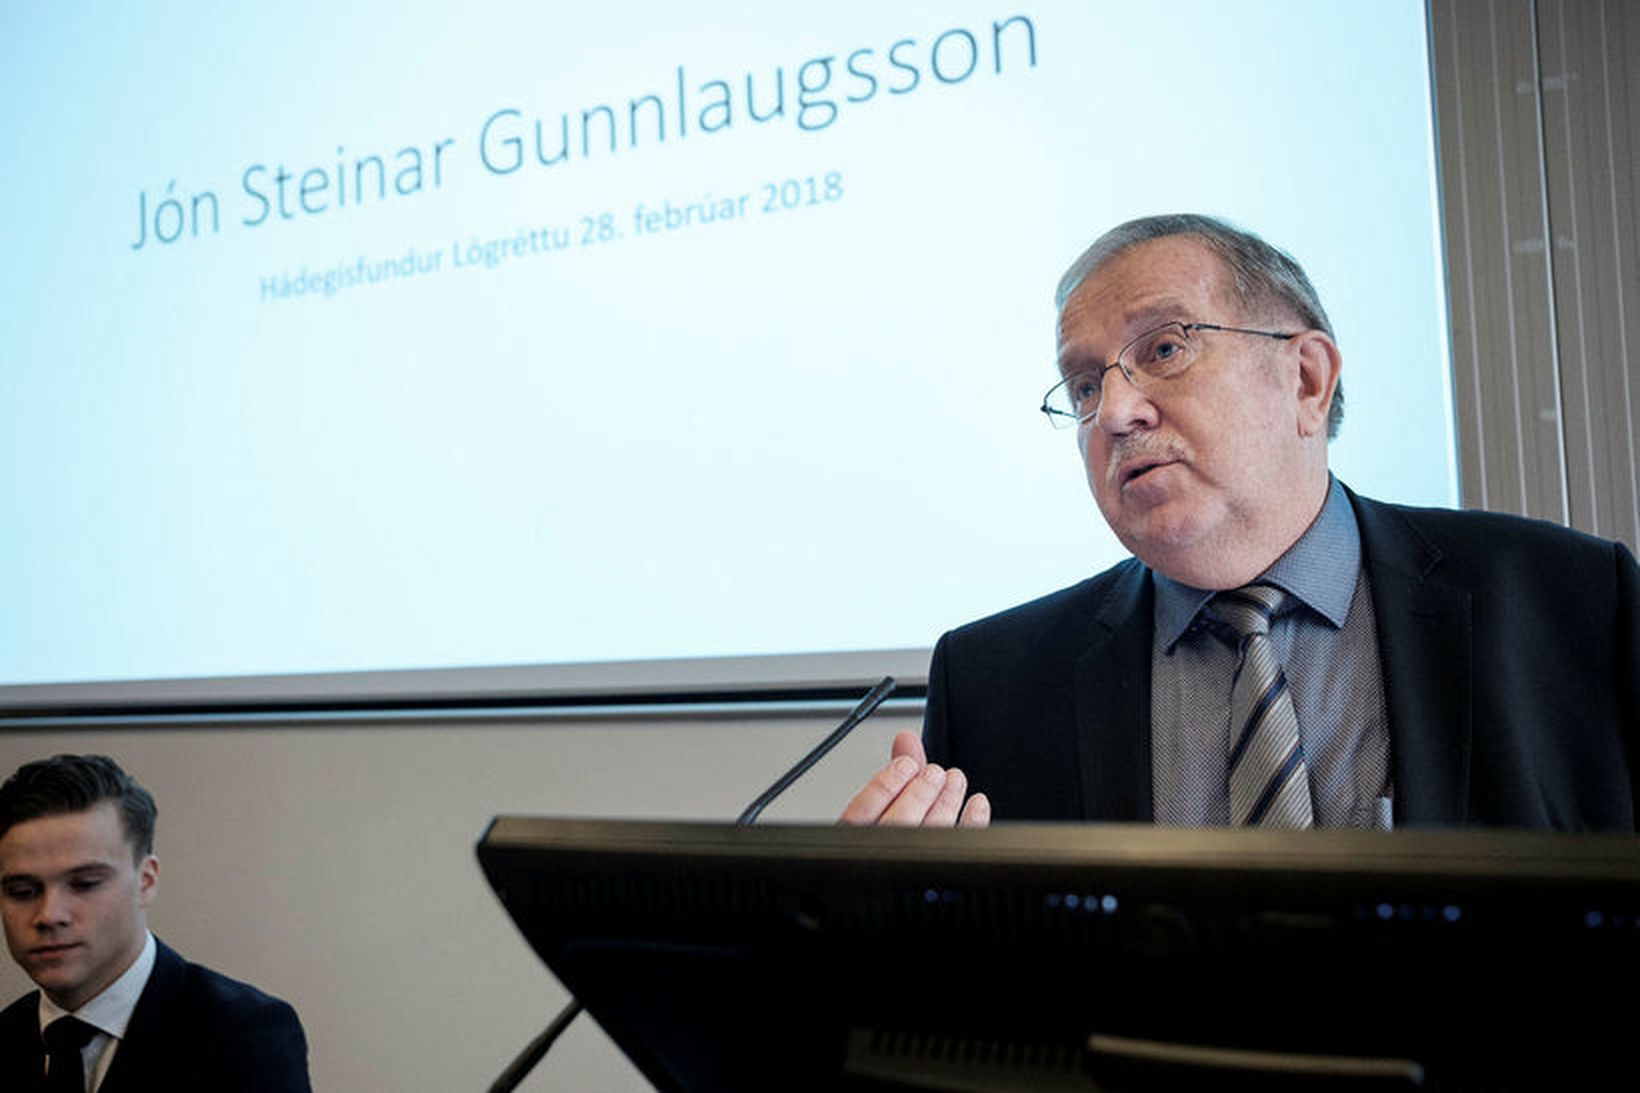 Jón Steinar Gunnlaugsson.